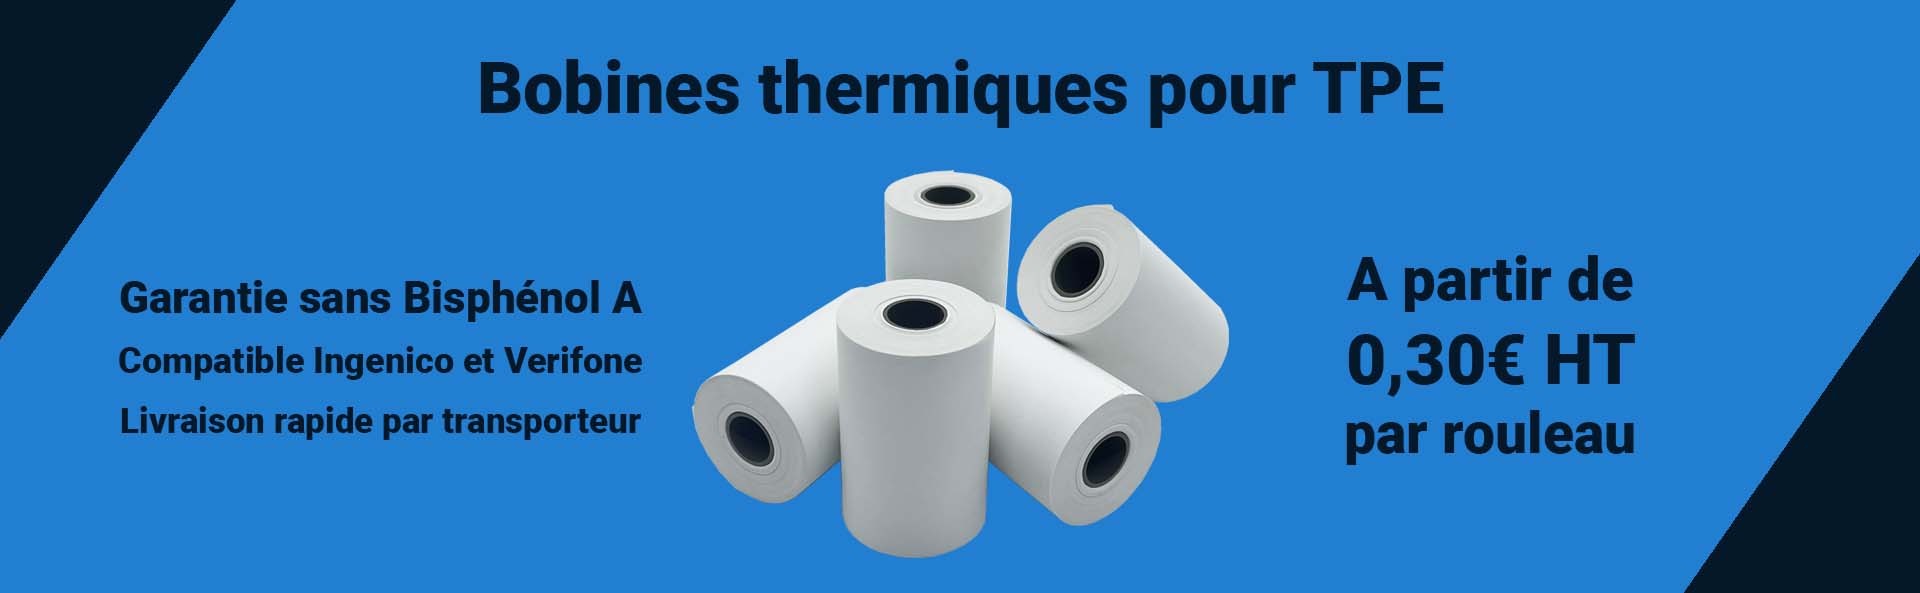 Papier thermique pour TPE